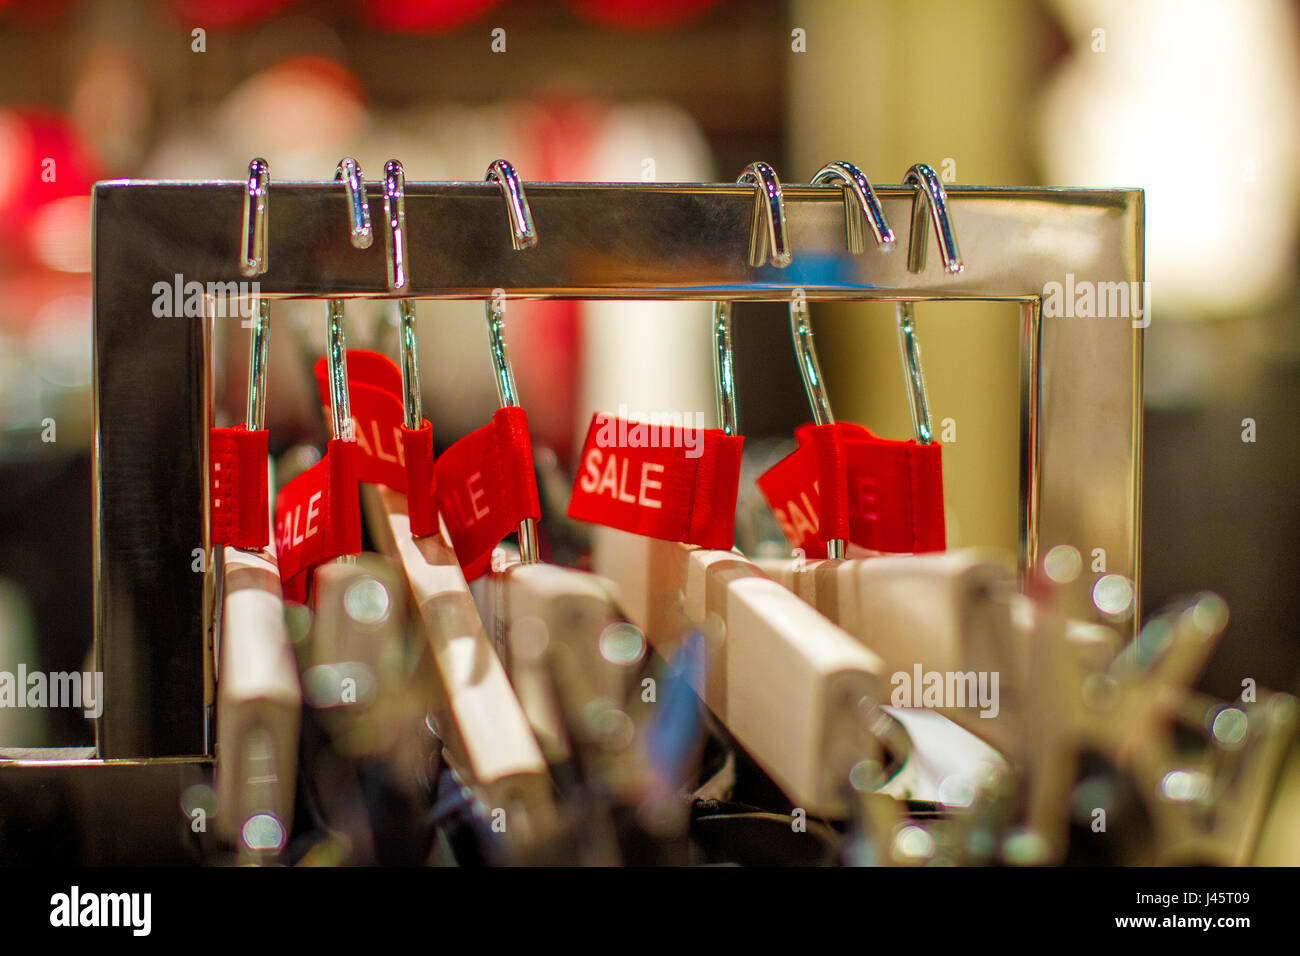 Immagine etichetta rossa di vendita con pantaloni su un appendiabiti in negozio Foto Stock